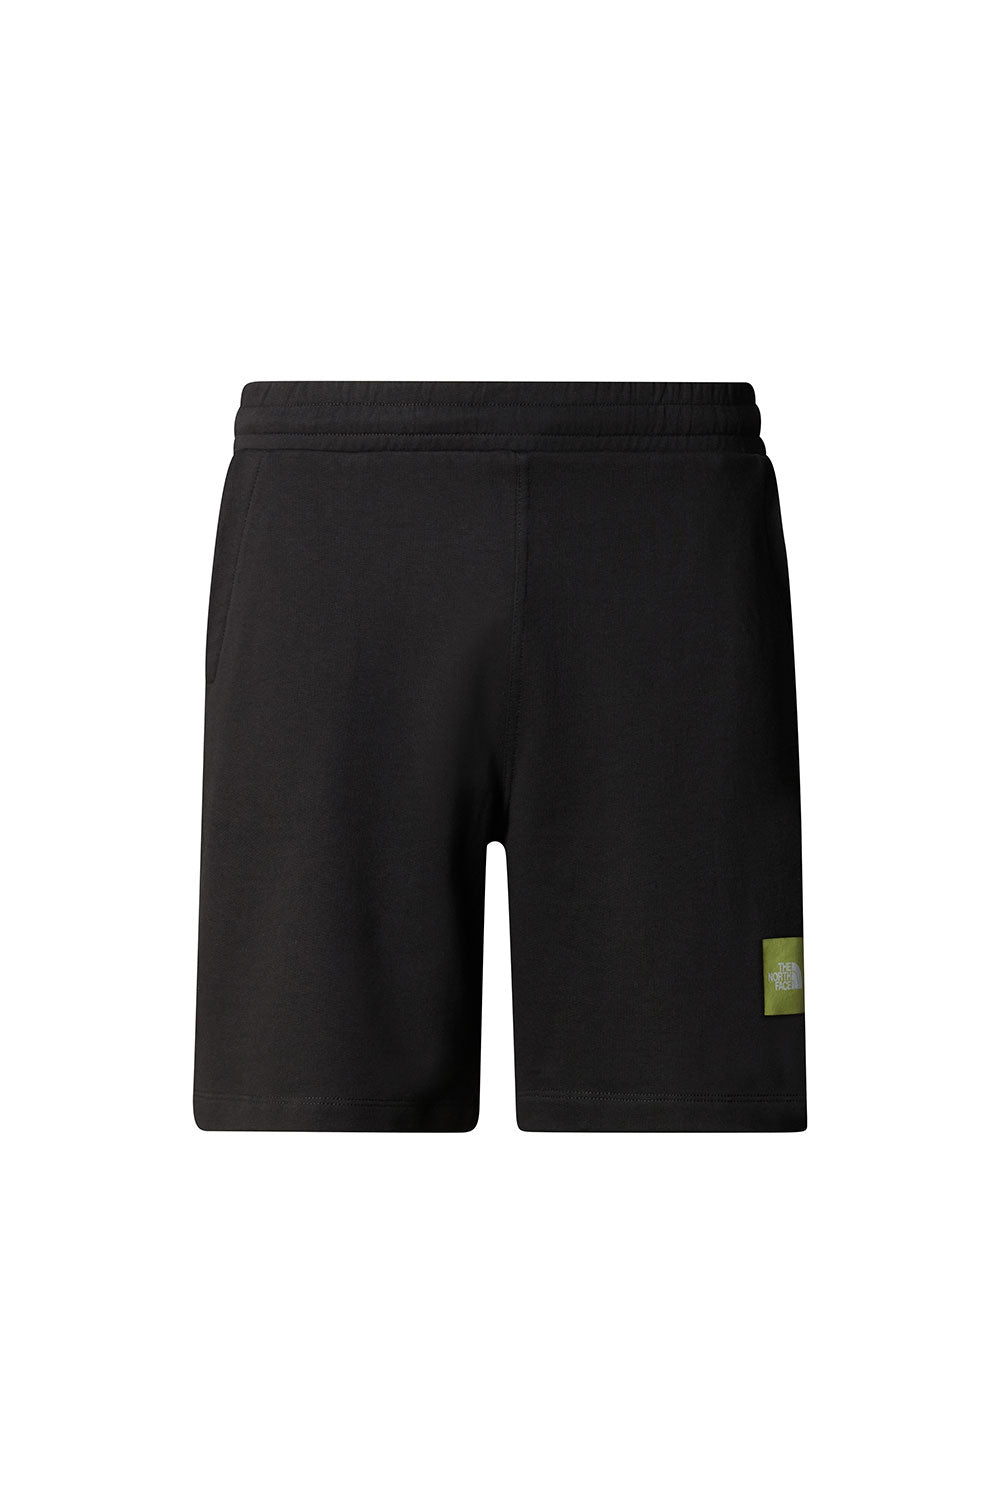 דה נורת' פייס מכנסיים קצרים Coordinates בצבע שחור לגברים-The North Face-XS-נאקו